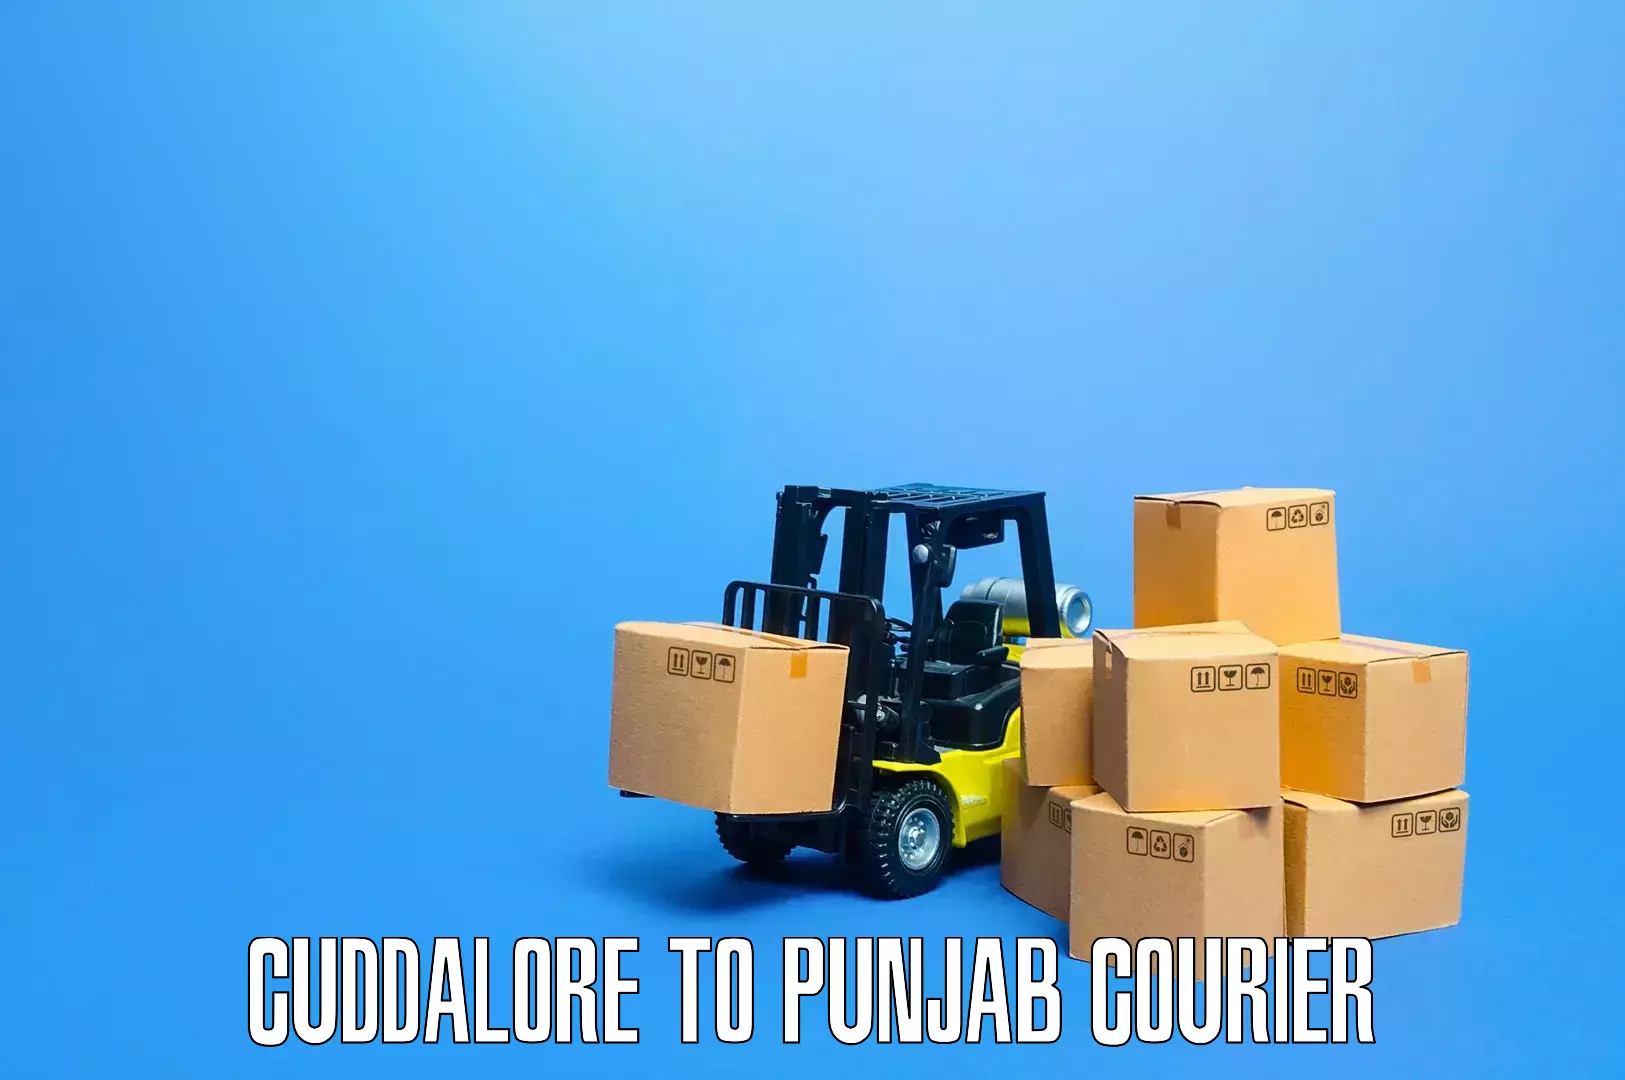 Residential furniture transport Cuddalore to Punjab